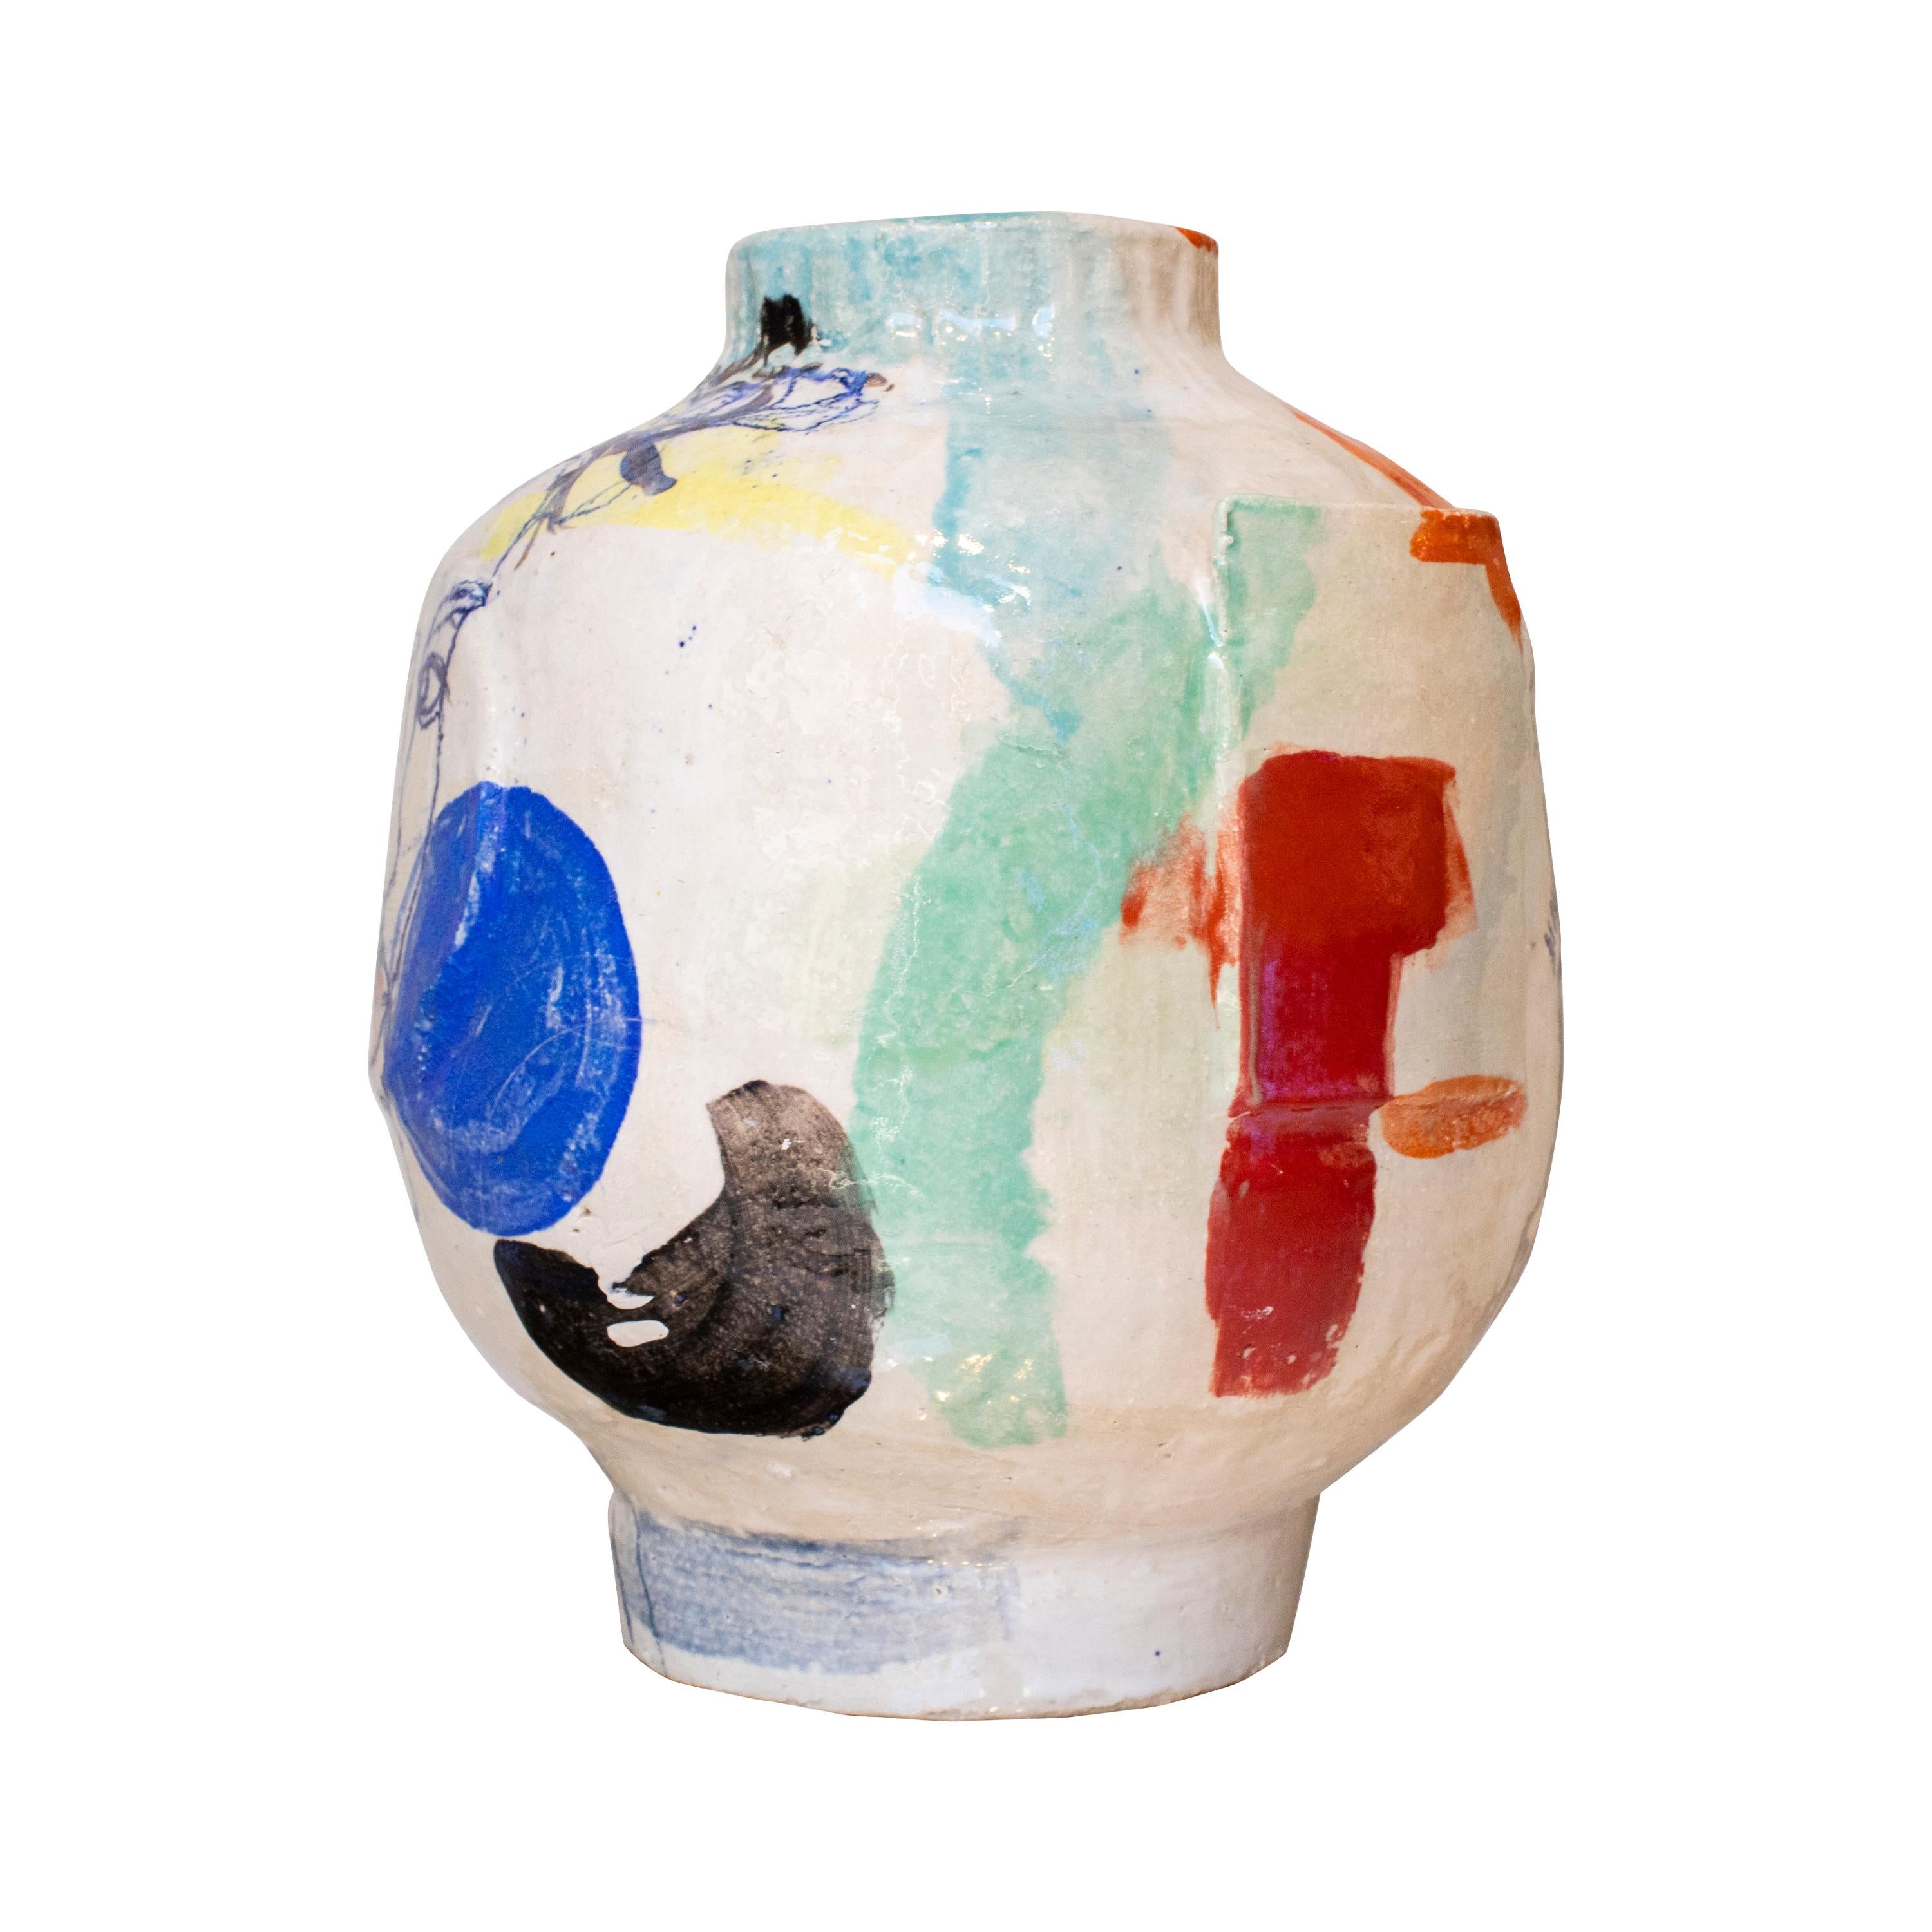 Vase moderne peint et fabriqué à la main, conçu par l'artiste espagnole Ana Laso.

ANA LASO BAEZA est une artiste madrilène qui développe son activité fondamentalement en tant que peintre et, depuis quelques années, également en tant que céramiste.